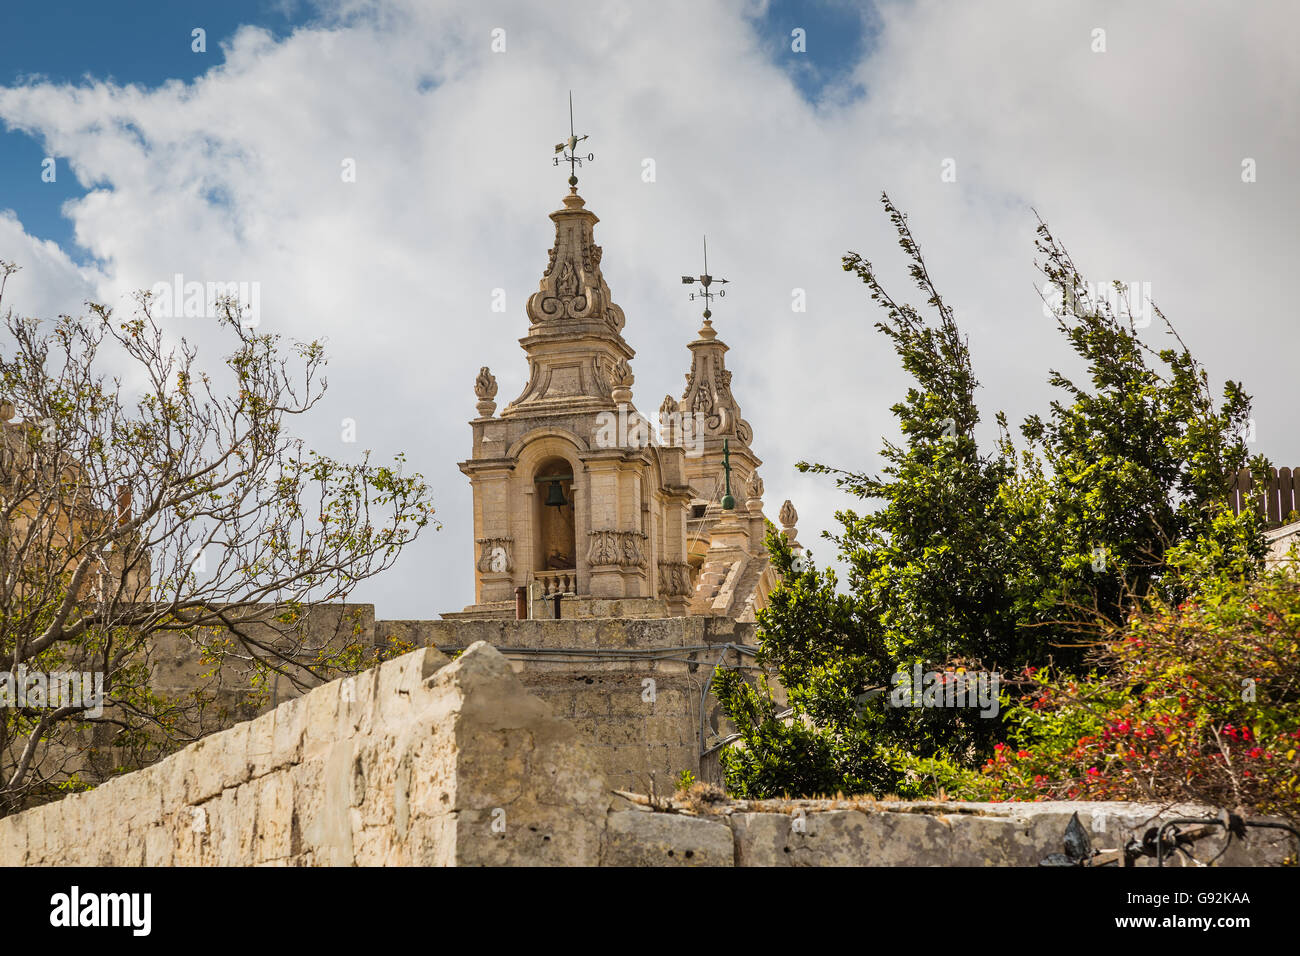 La belle architecture de Mdina, Malte - ancienne capitale et la ville silencieuse de Malte - ville médiévale Banque D'Images